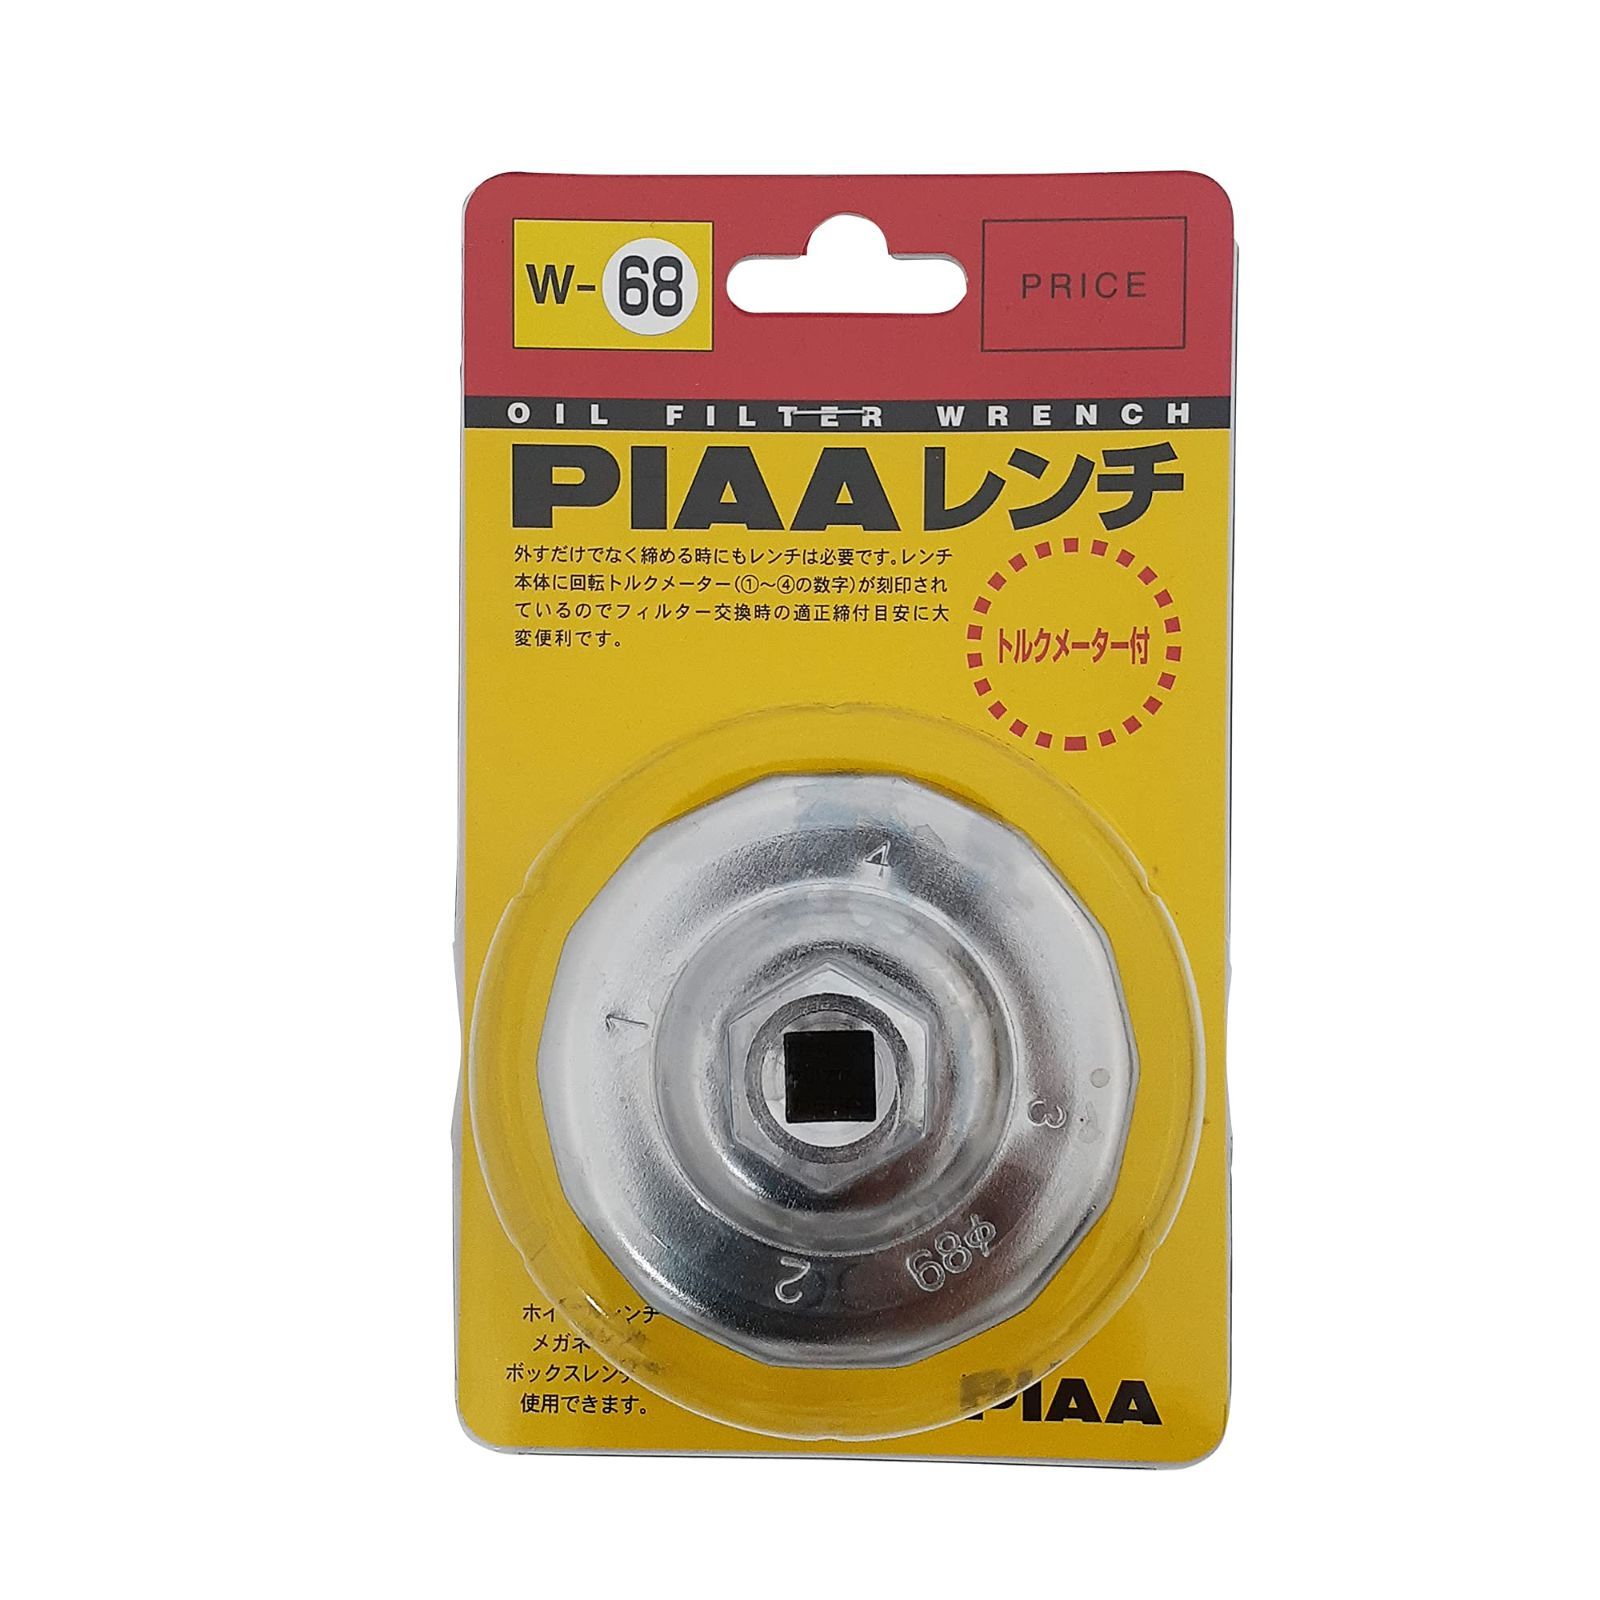 【即日発送】カップ型レンチ 1個入 オイルフィルター用 (適用フィルター品番:PM7/PM8/PM11/PA4/PF1…) トルクメーター付き PIAA(ピア) W68